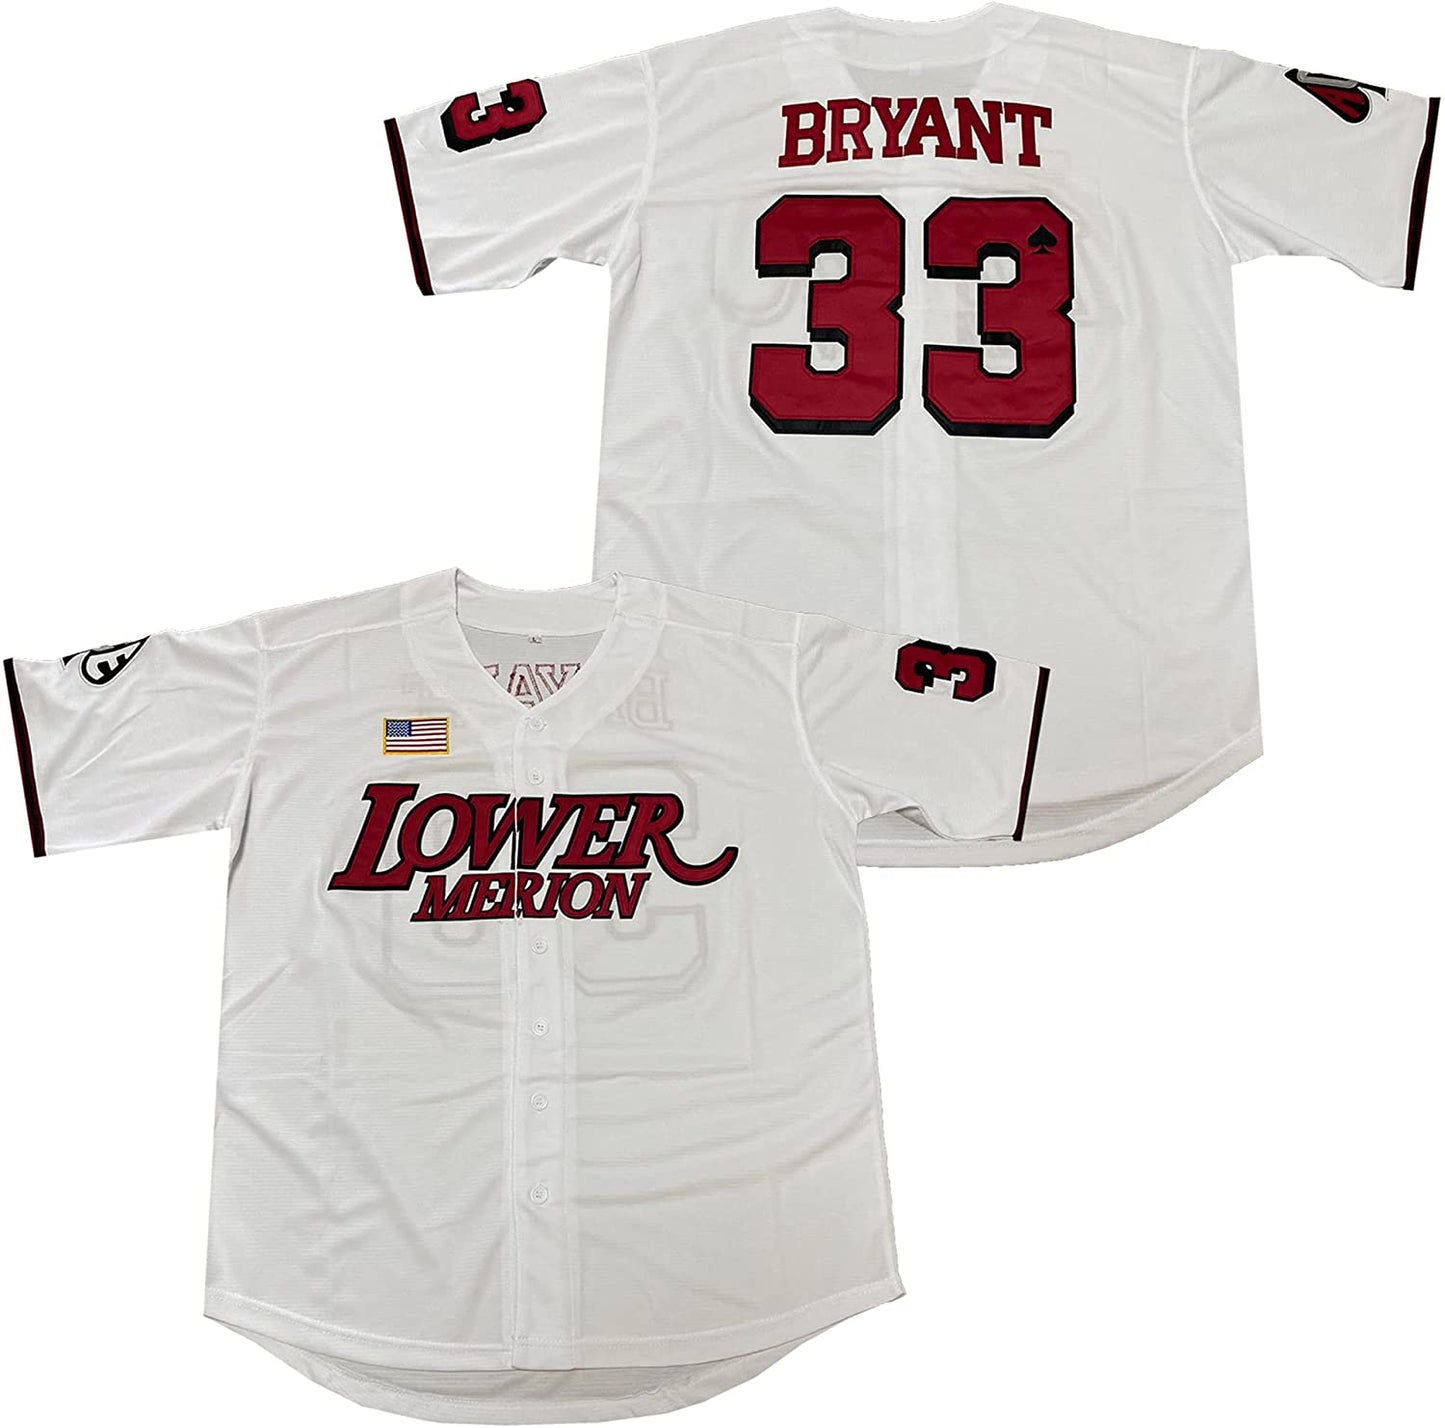 Kobe Bryant #33 Lower Merion Baseball Jersey